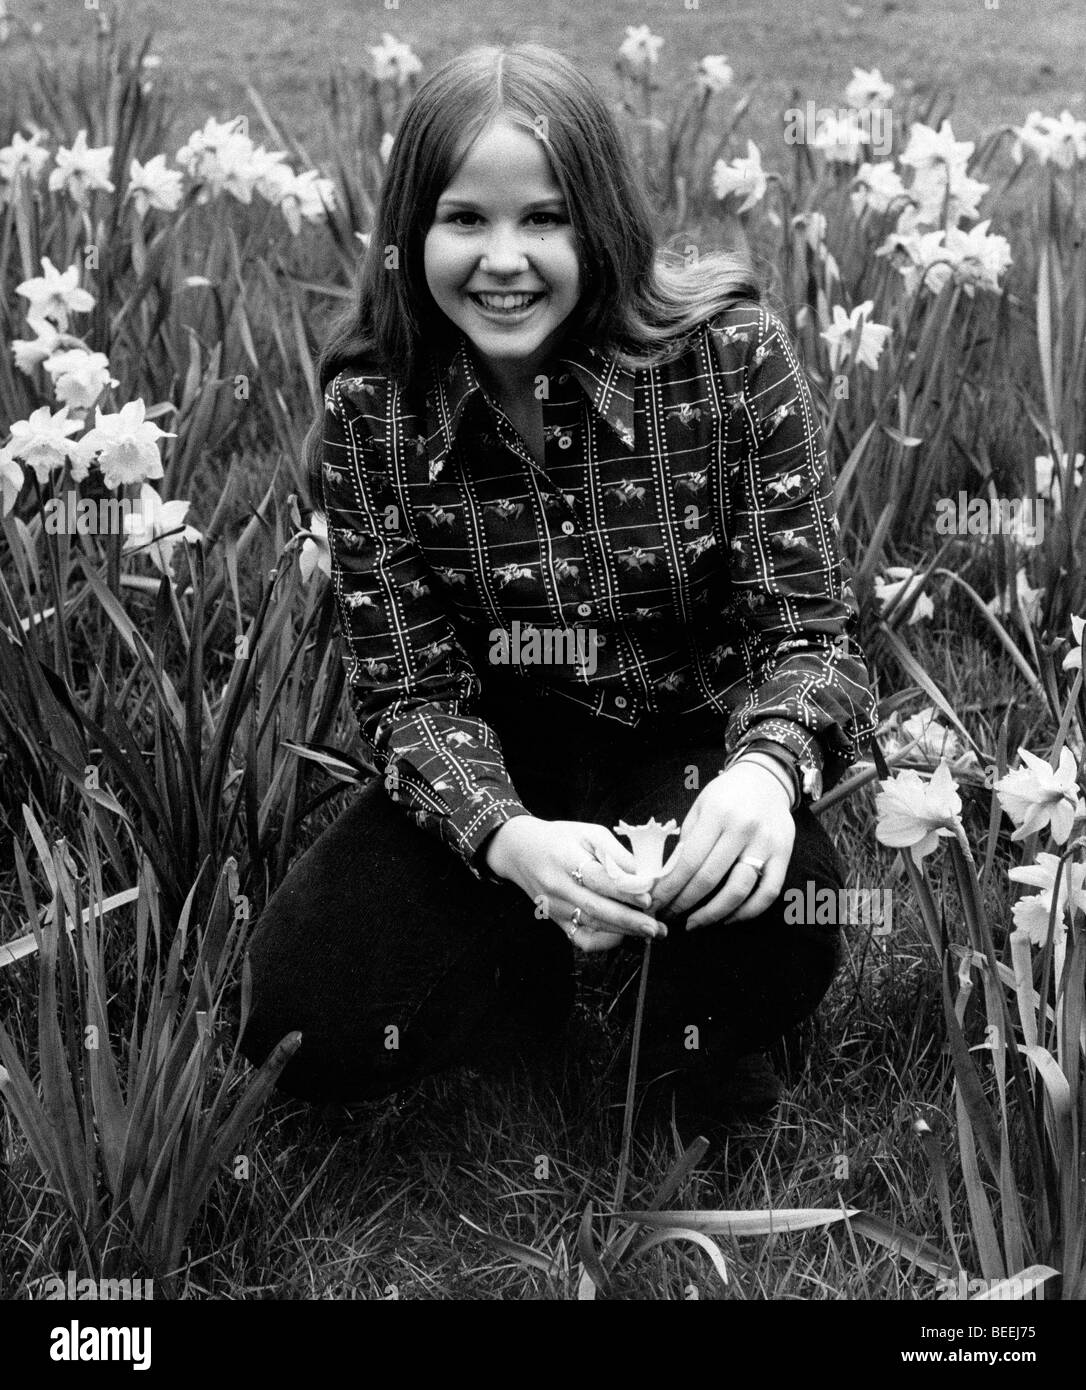 L'actrice Linda Blair posant avec des fleurs. Banque D'Images